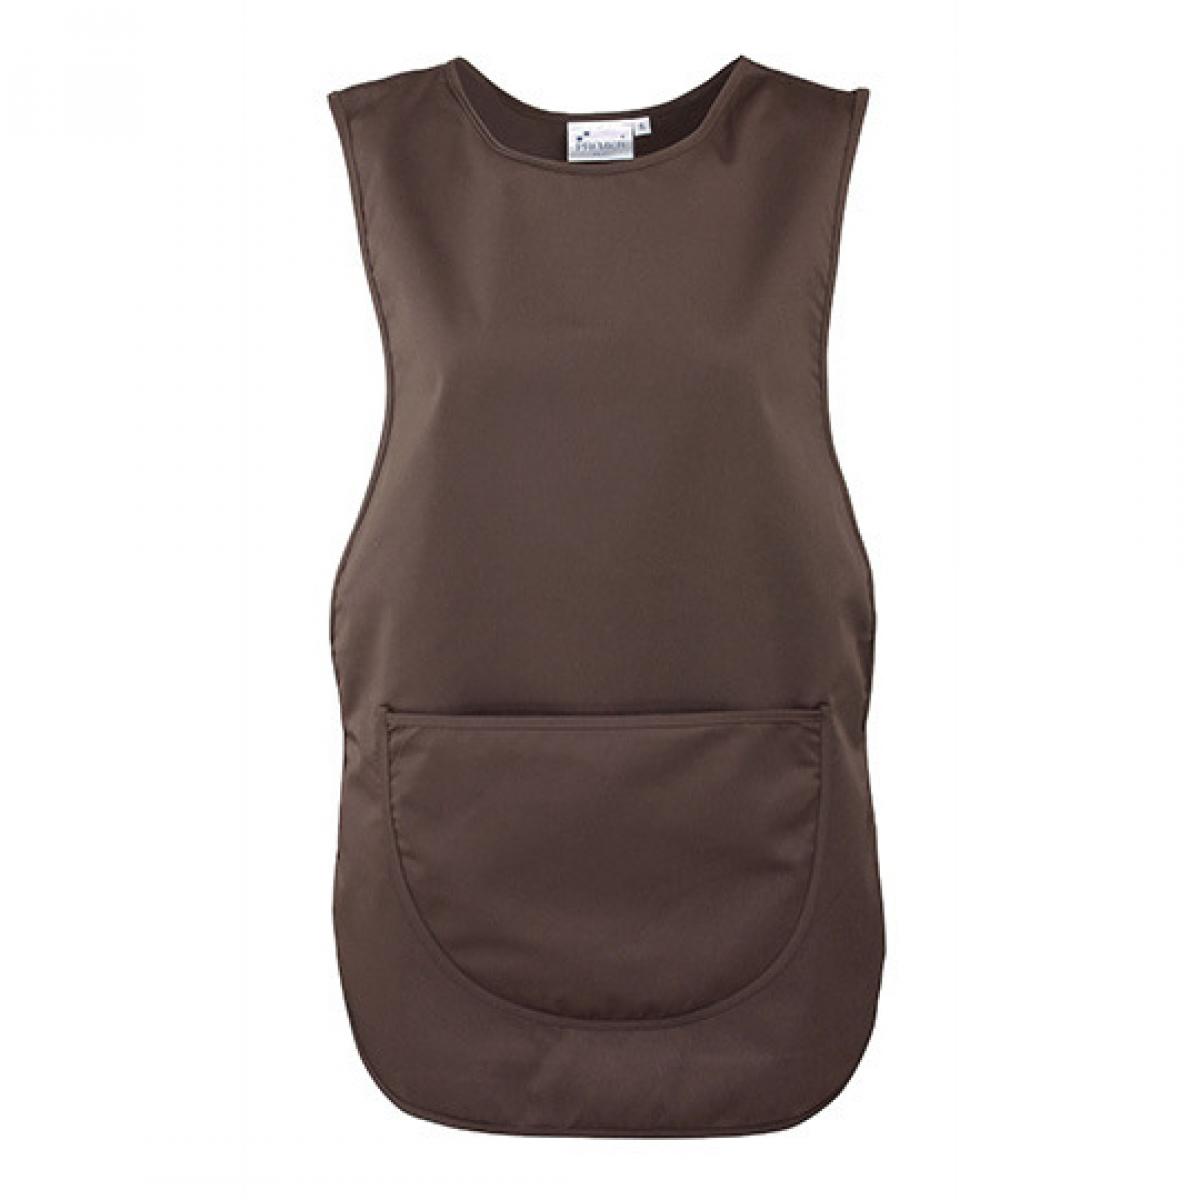 Hersteller: Premier Workwear Herstellernummer: PR171 Artikelbezeichnung: Women`s Pocket Tabard - Waschbar bis 60 °C Farbe: Brown (ca. Pantone 476)